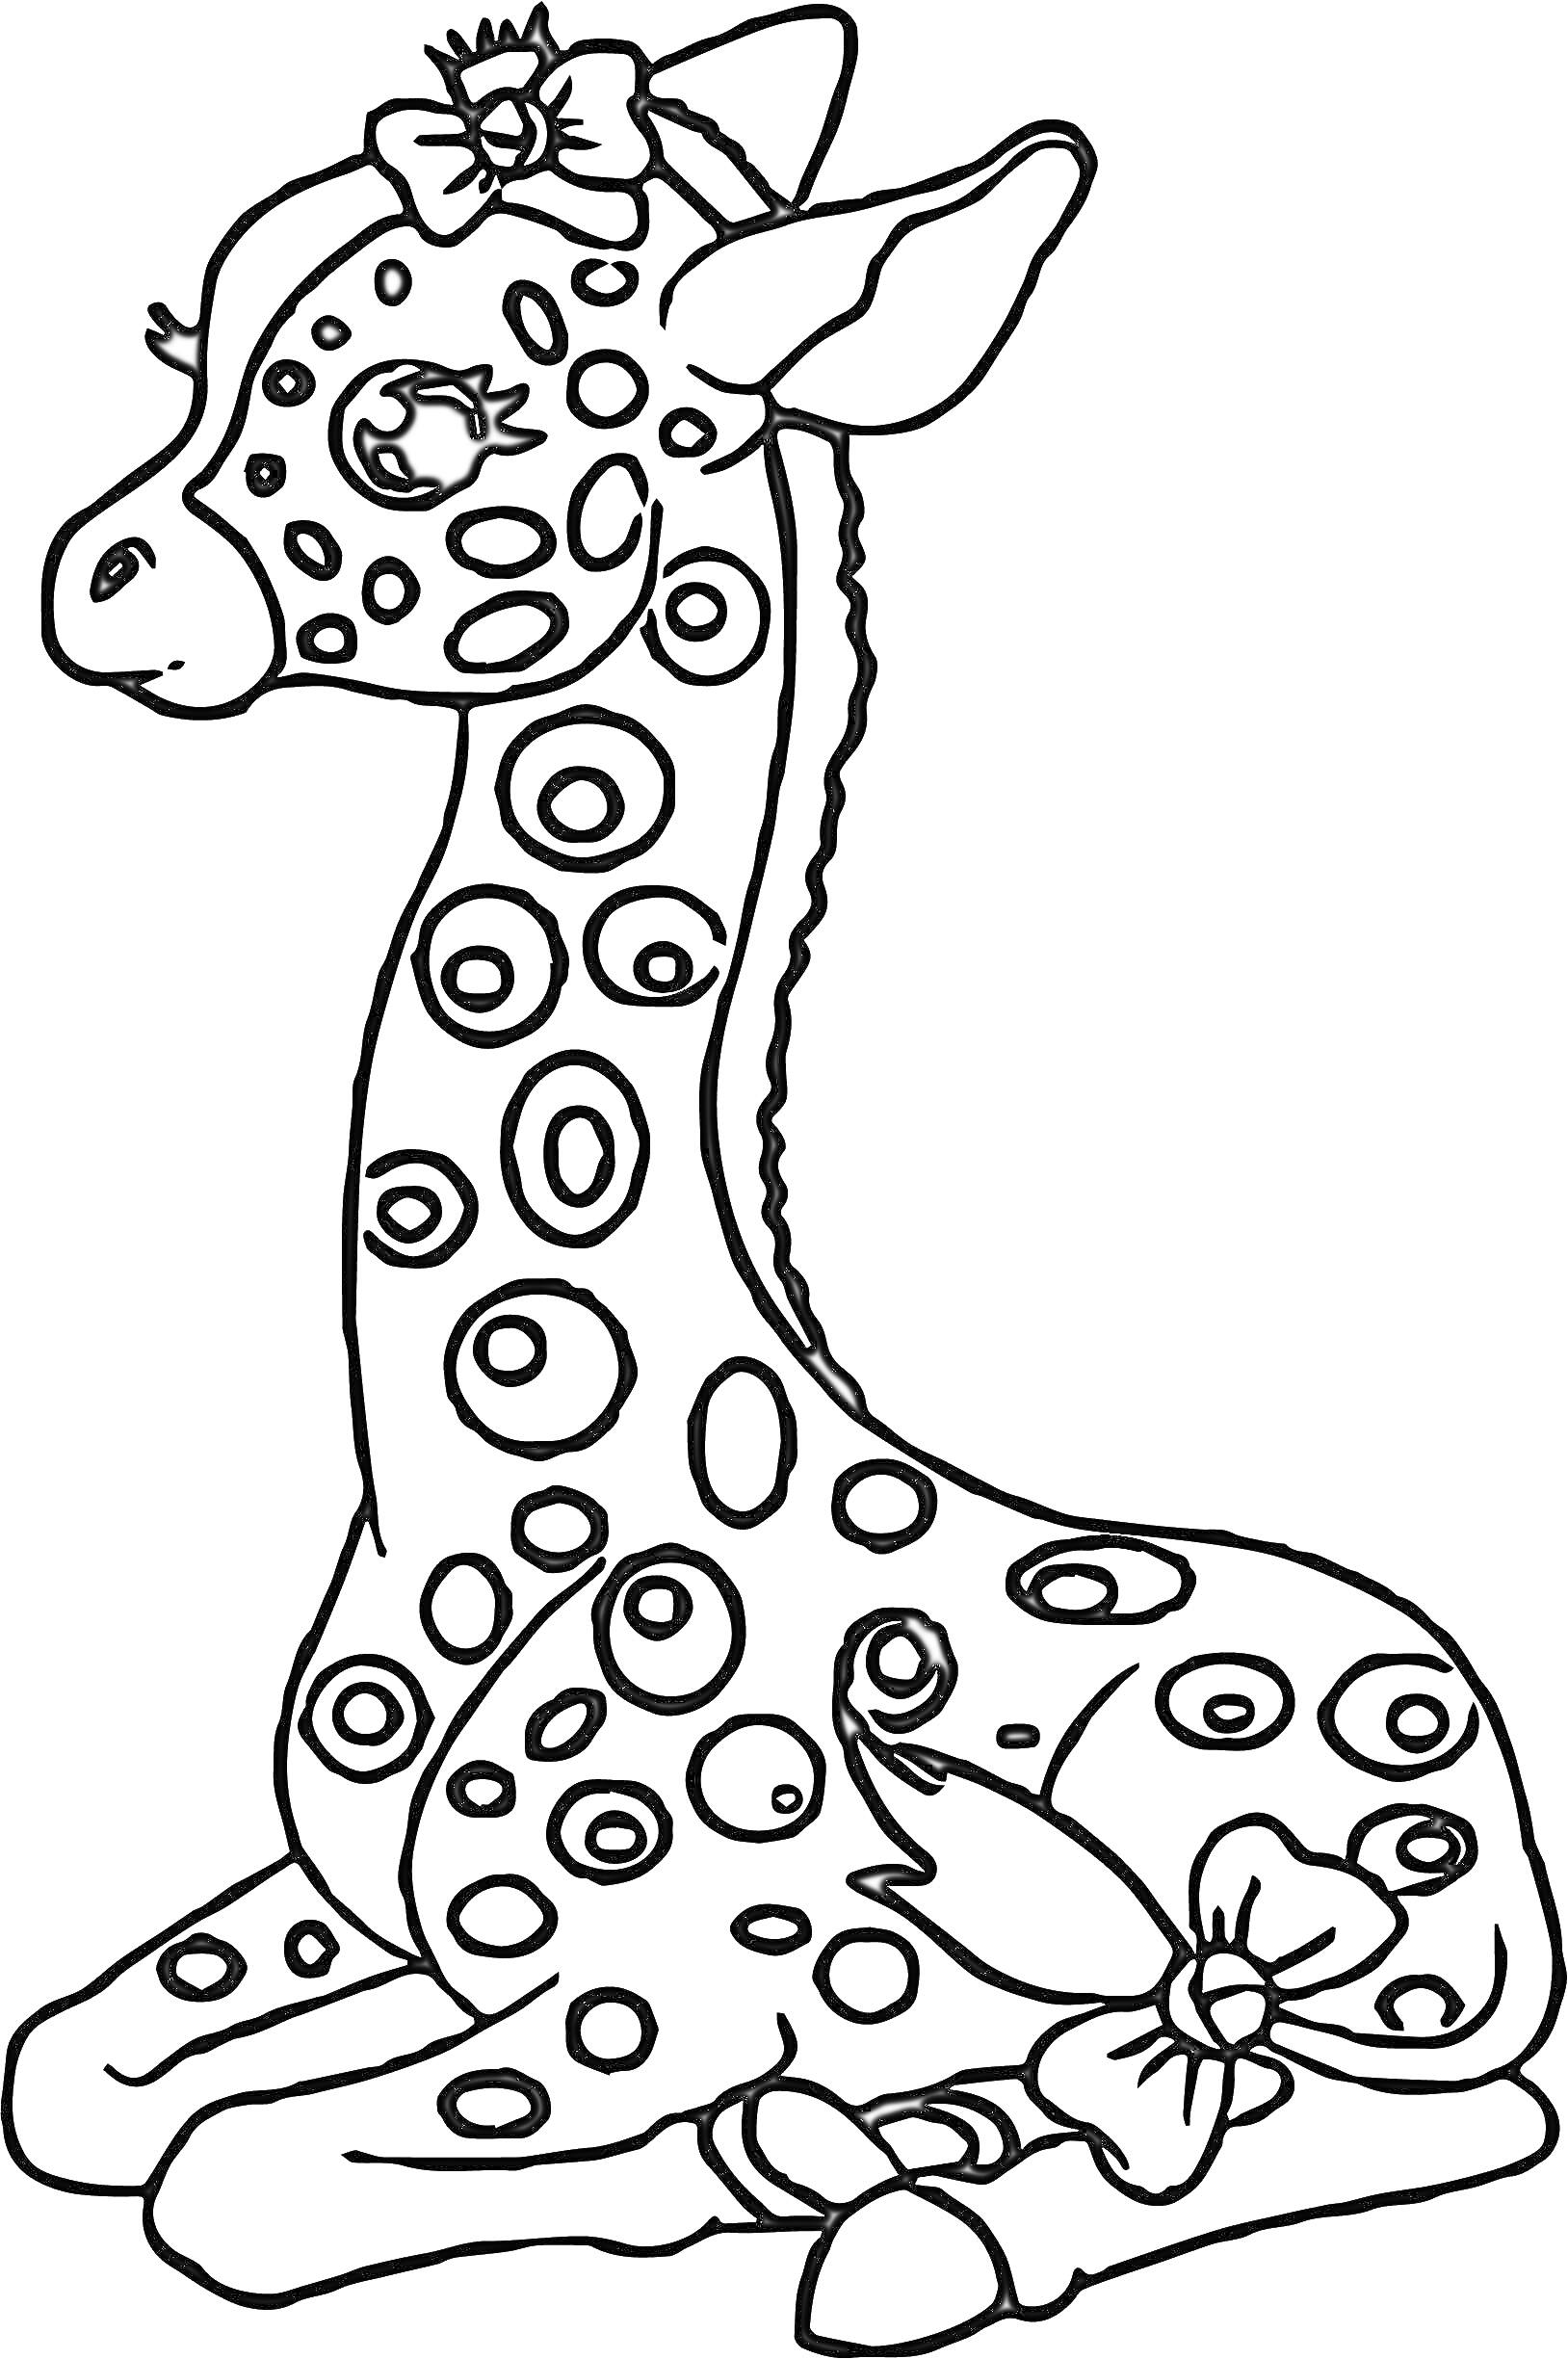 Маленький жираф с большими глазами, сидящий и украшенный бантами